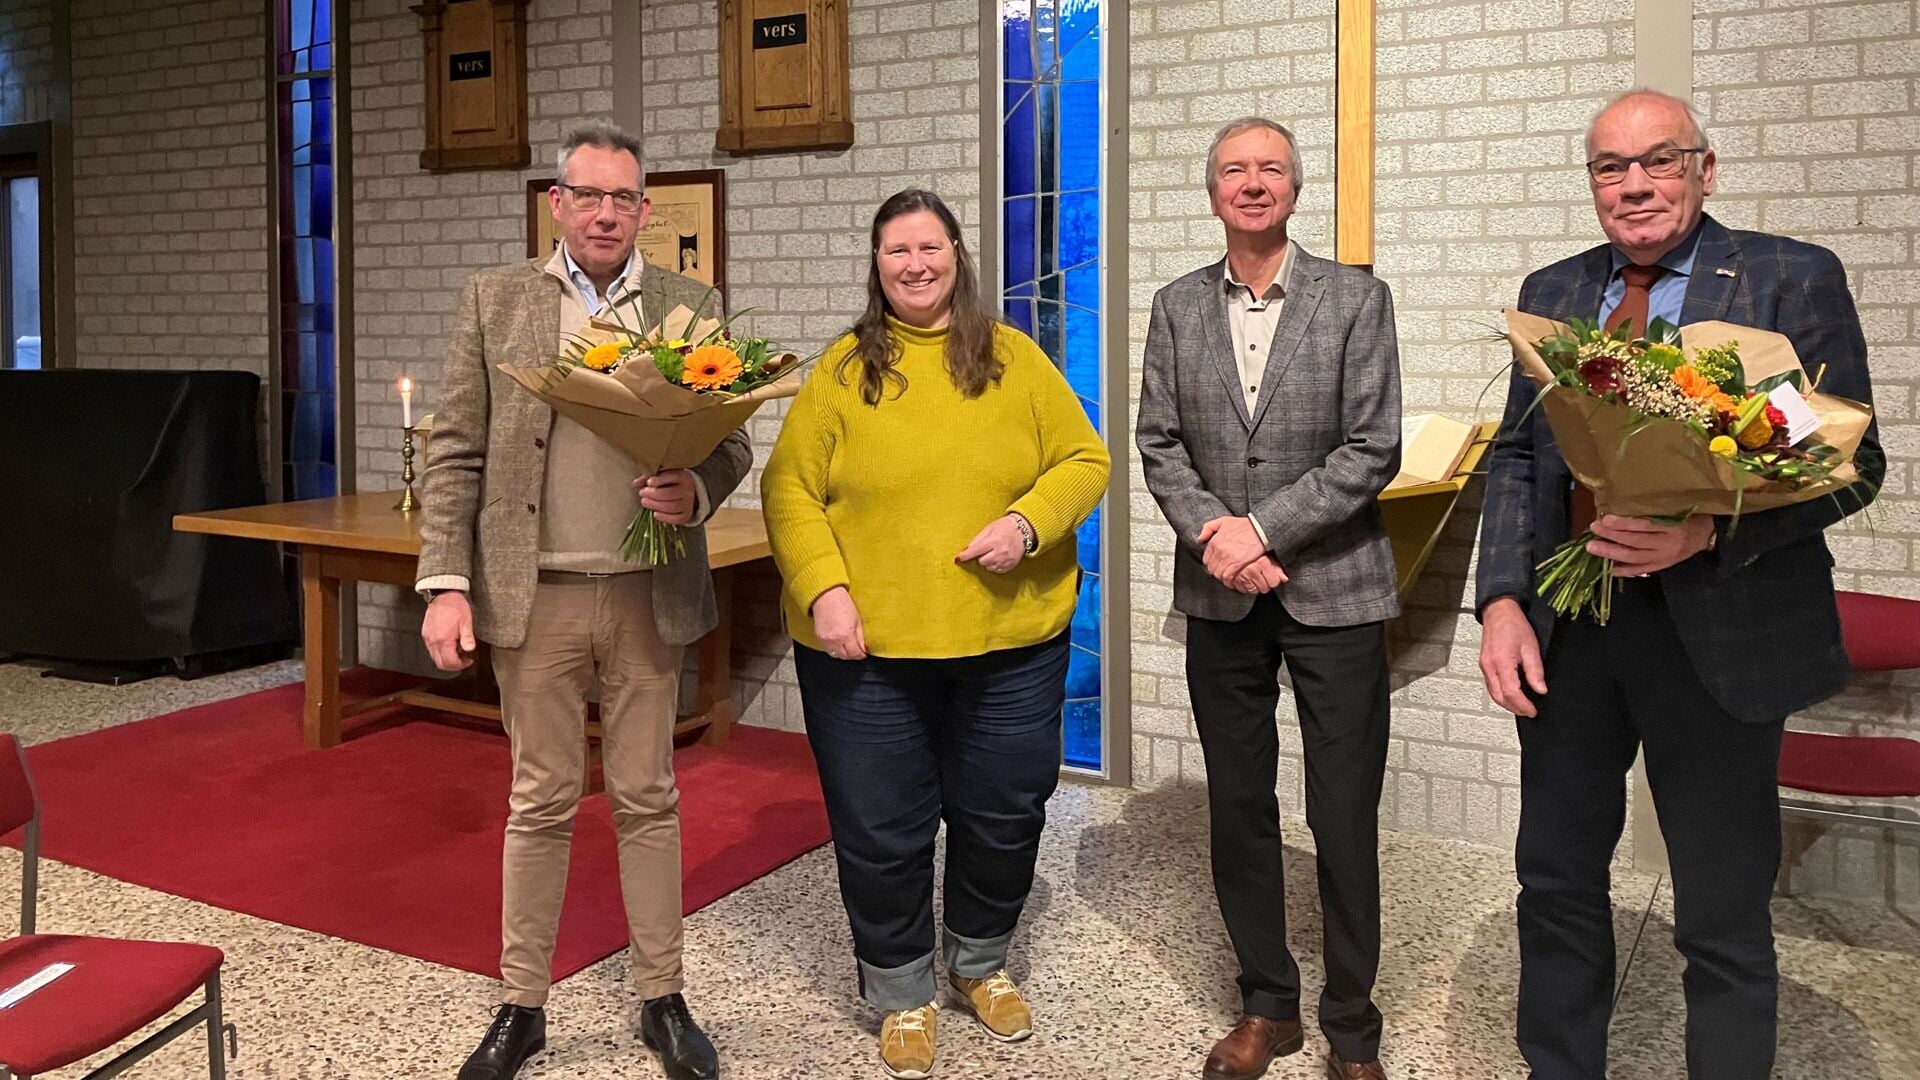 Bloemen voor Roelof v/d Broek en Wichert de Lange voor de hulp bij de samenvoeging van de Protestantse gemeenten Cuijk en Uden-Veghel.